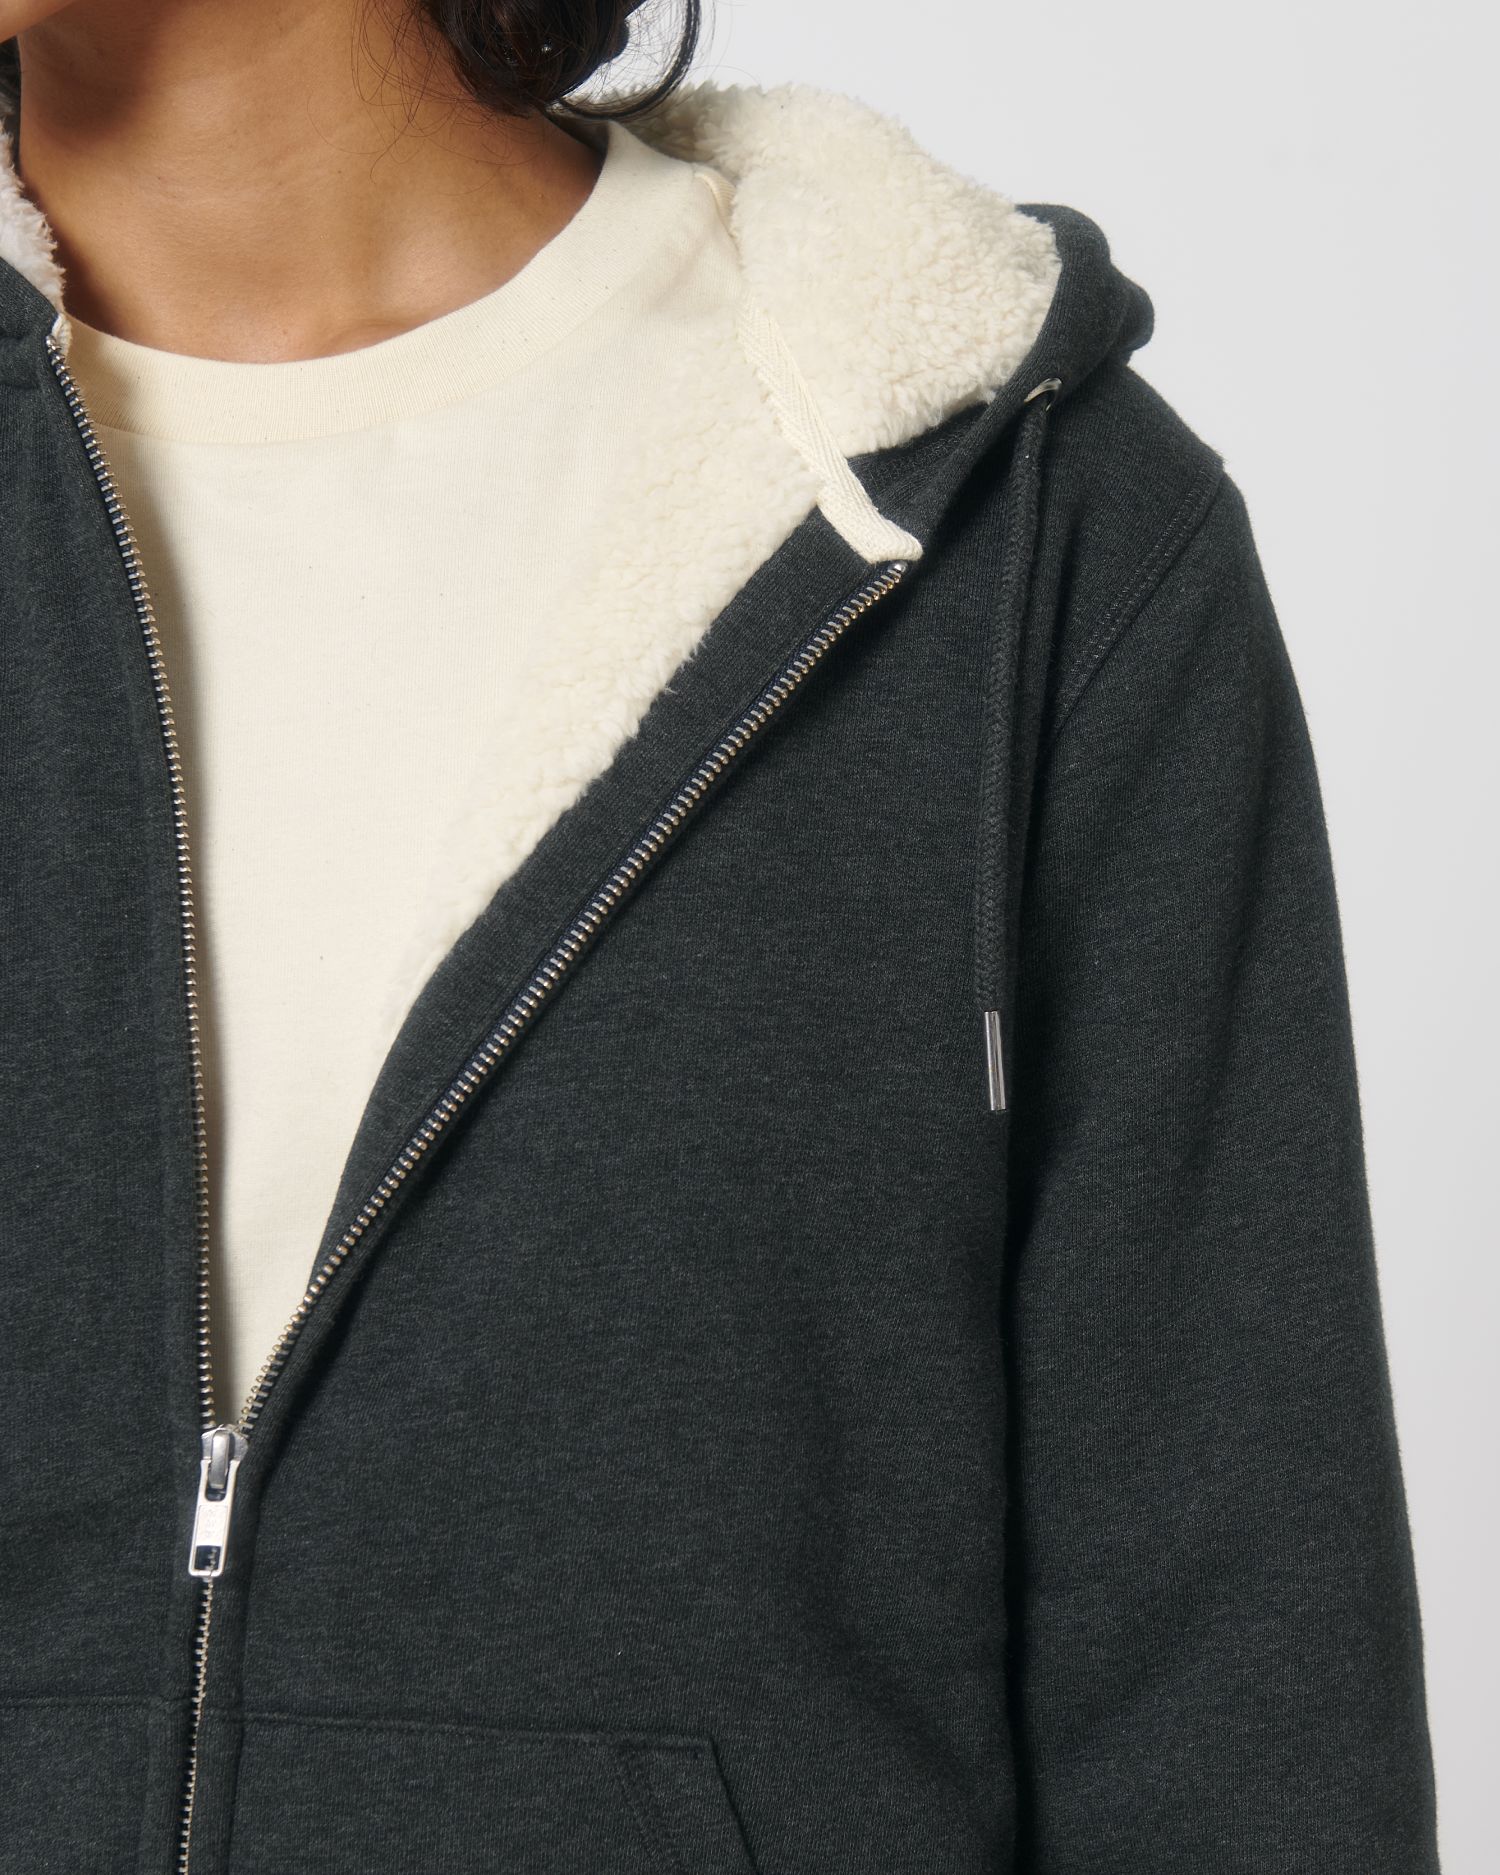 Zip-thru sweatshirts Hygger Sherpa in Farbe Dark Heather Grey